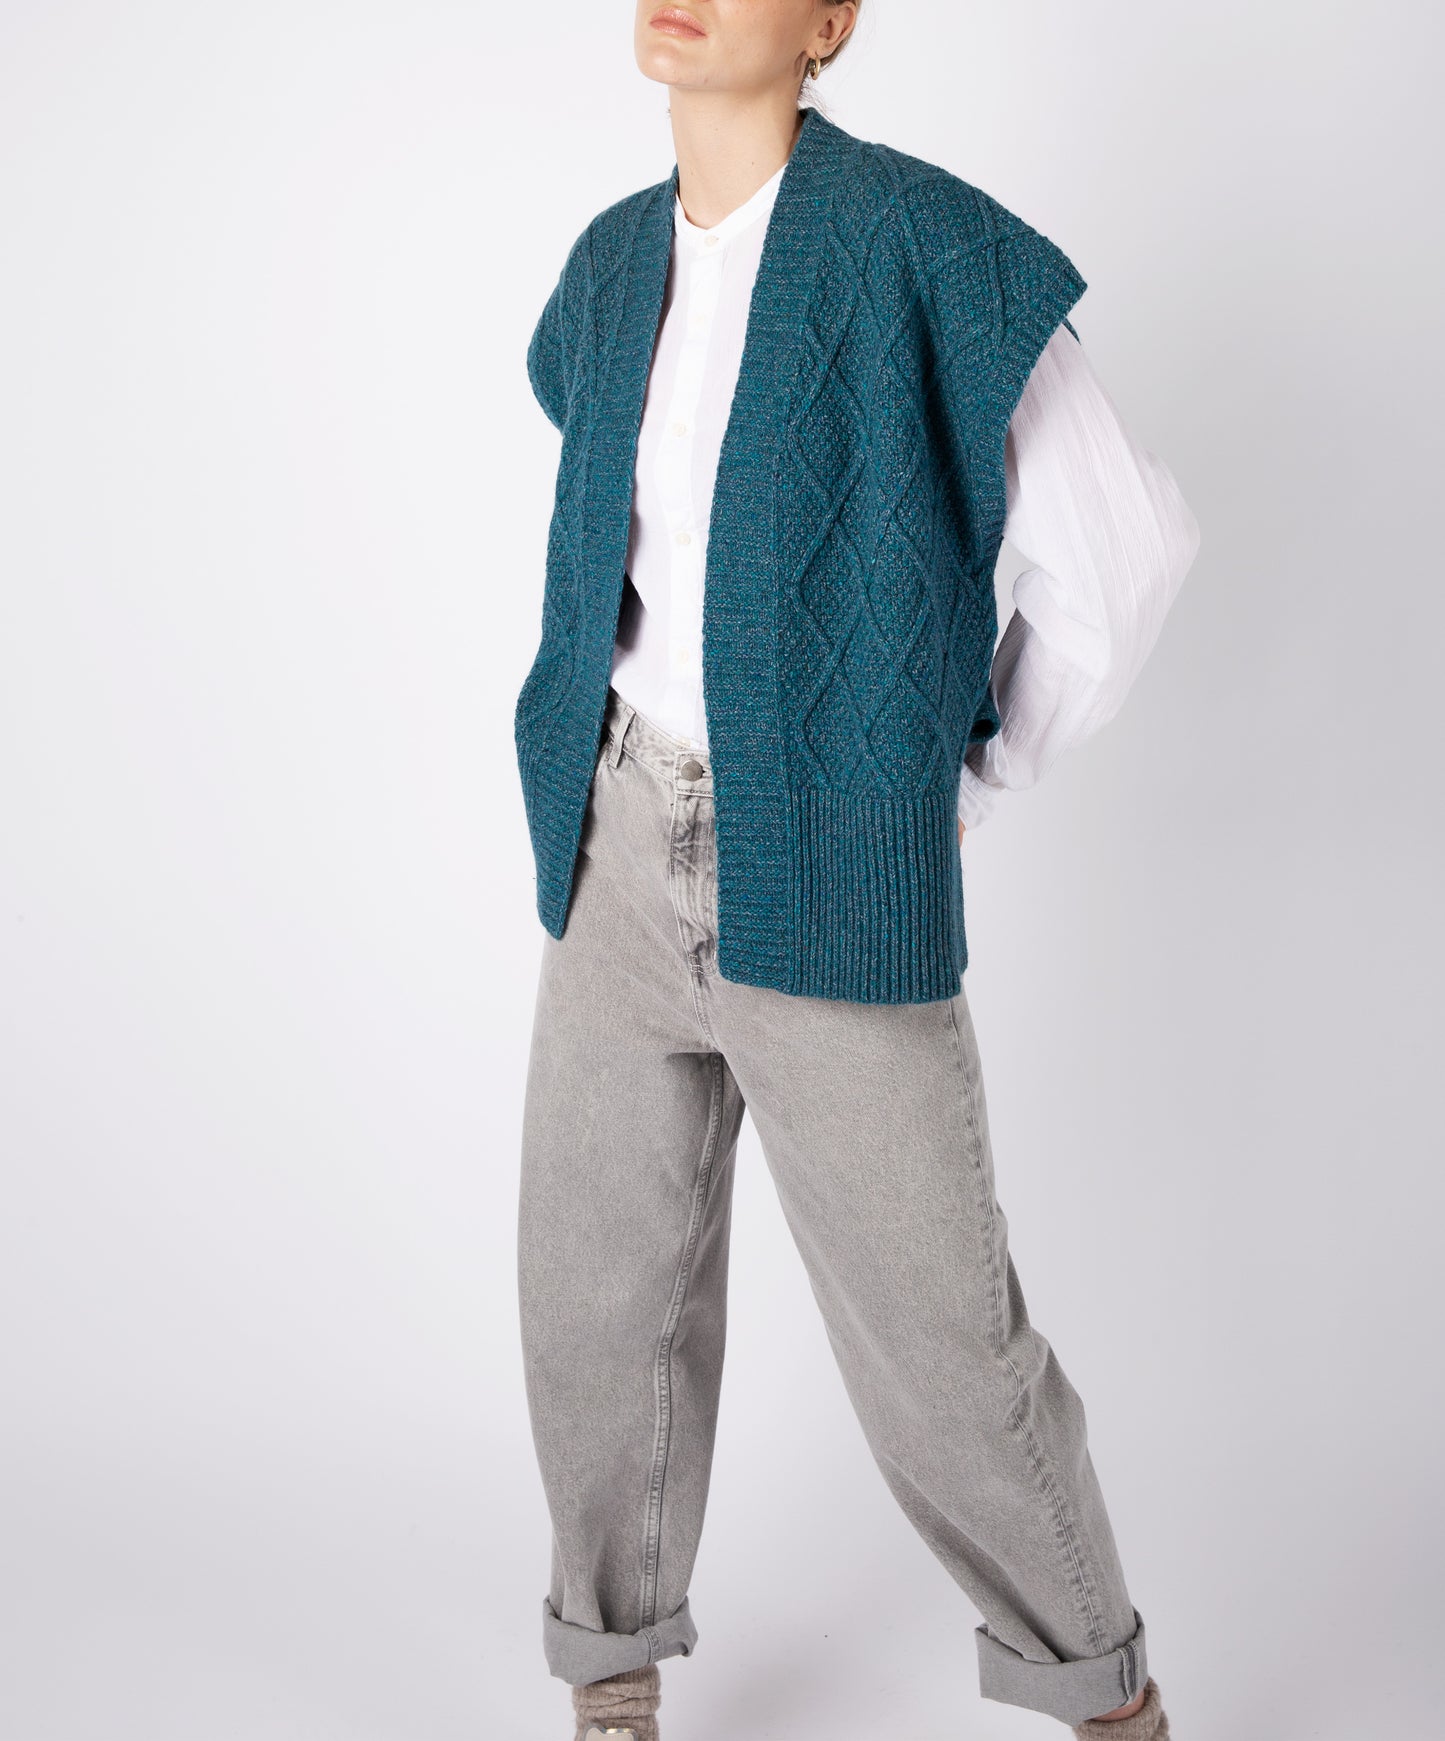 IrelandsEye Knitwear Women's Knitted 'Nettle' Diamond Pattern Vest Aquamarine